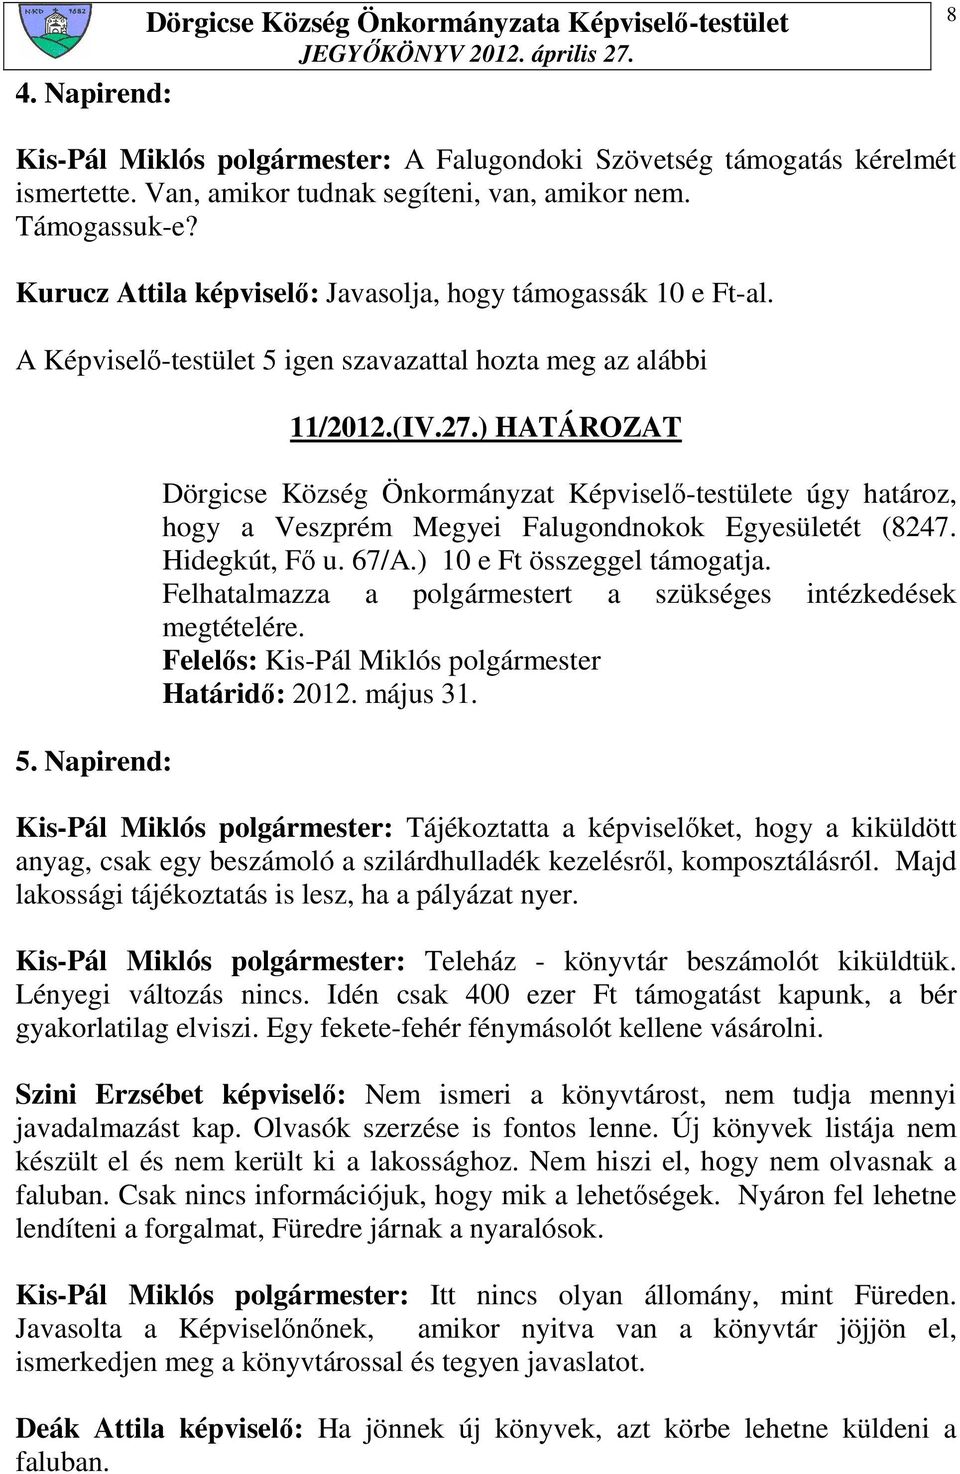 ) HATÁROZAT Dörgicse Község Önkormányzat Képviselı-testülete úgy határoz, hogy a Veszprém Megyei Falugondnokok Egyesületét (8247. Hidegkút, Fı u. 67/A.) 10 e Ft összeggel támogatja.